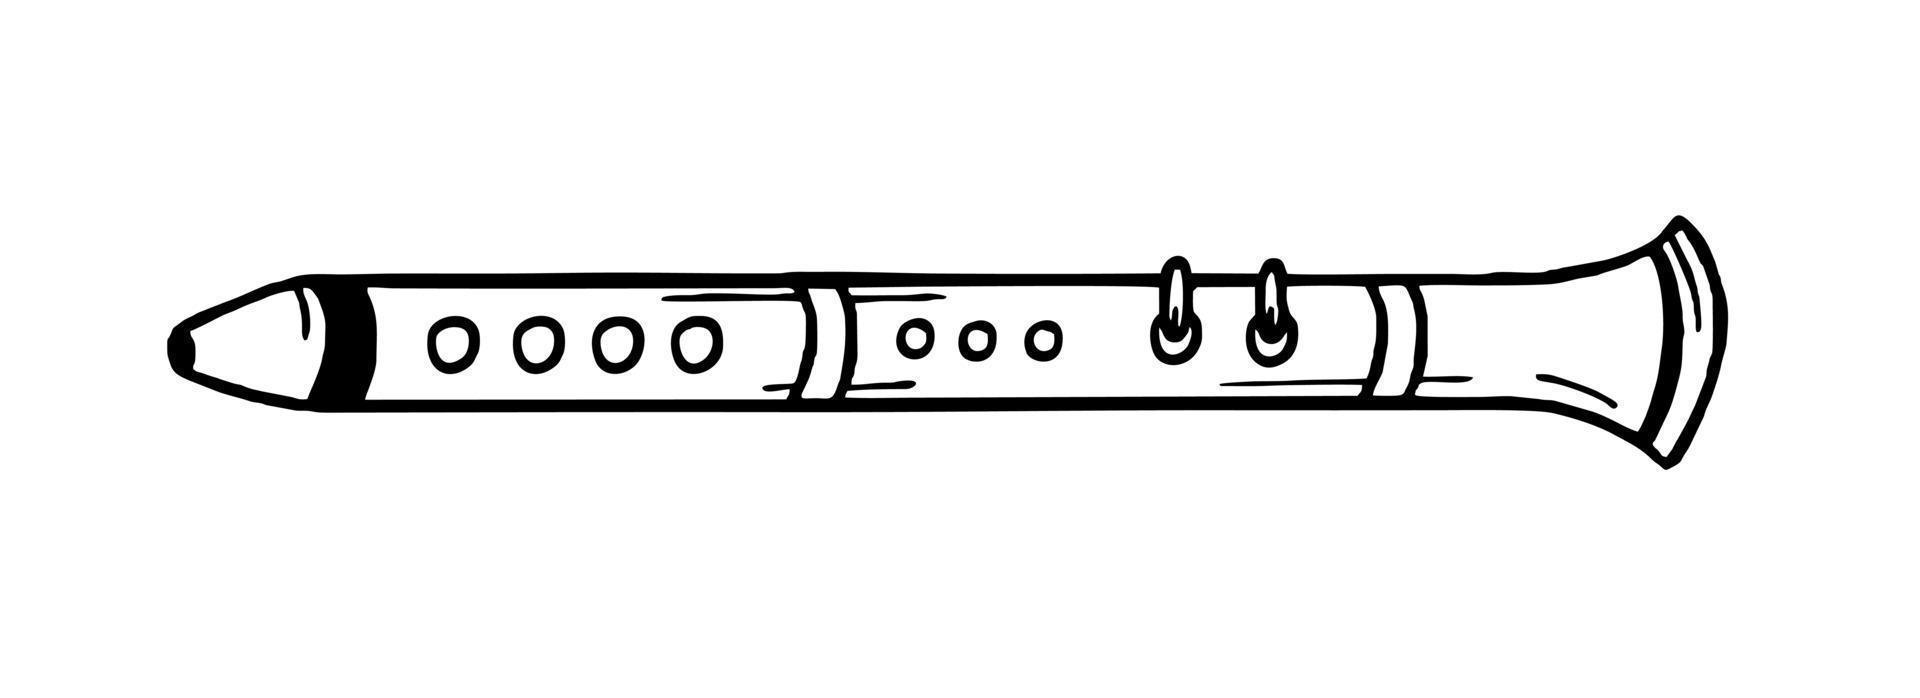 fluit musical instrument stijl hand- getrokken. vector zwart en wit tekening illustratie